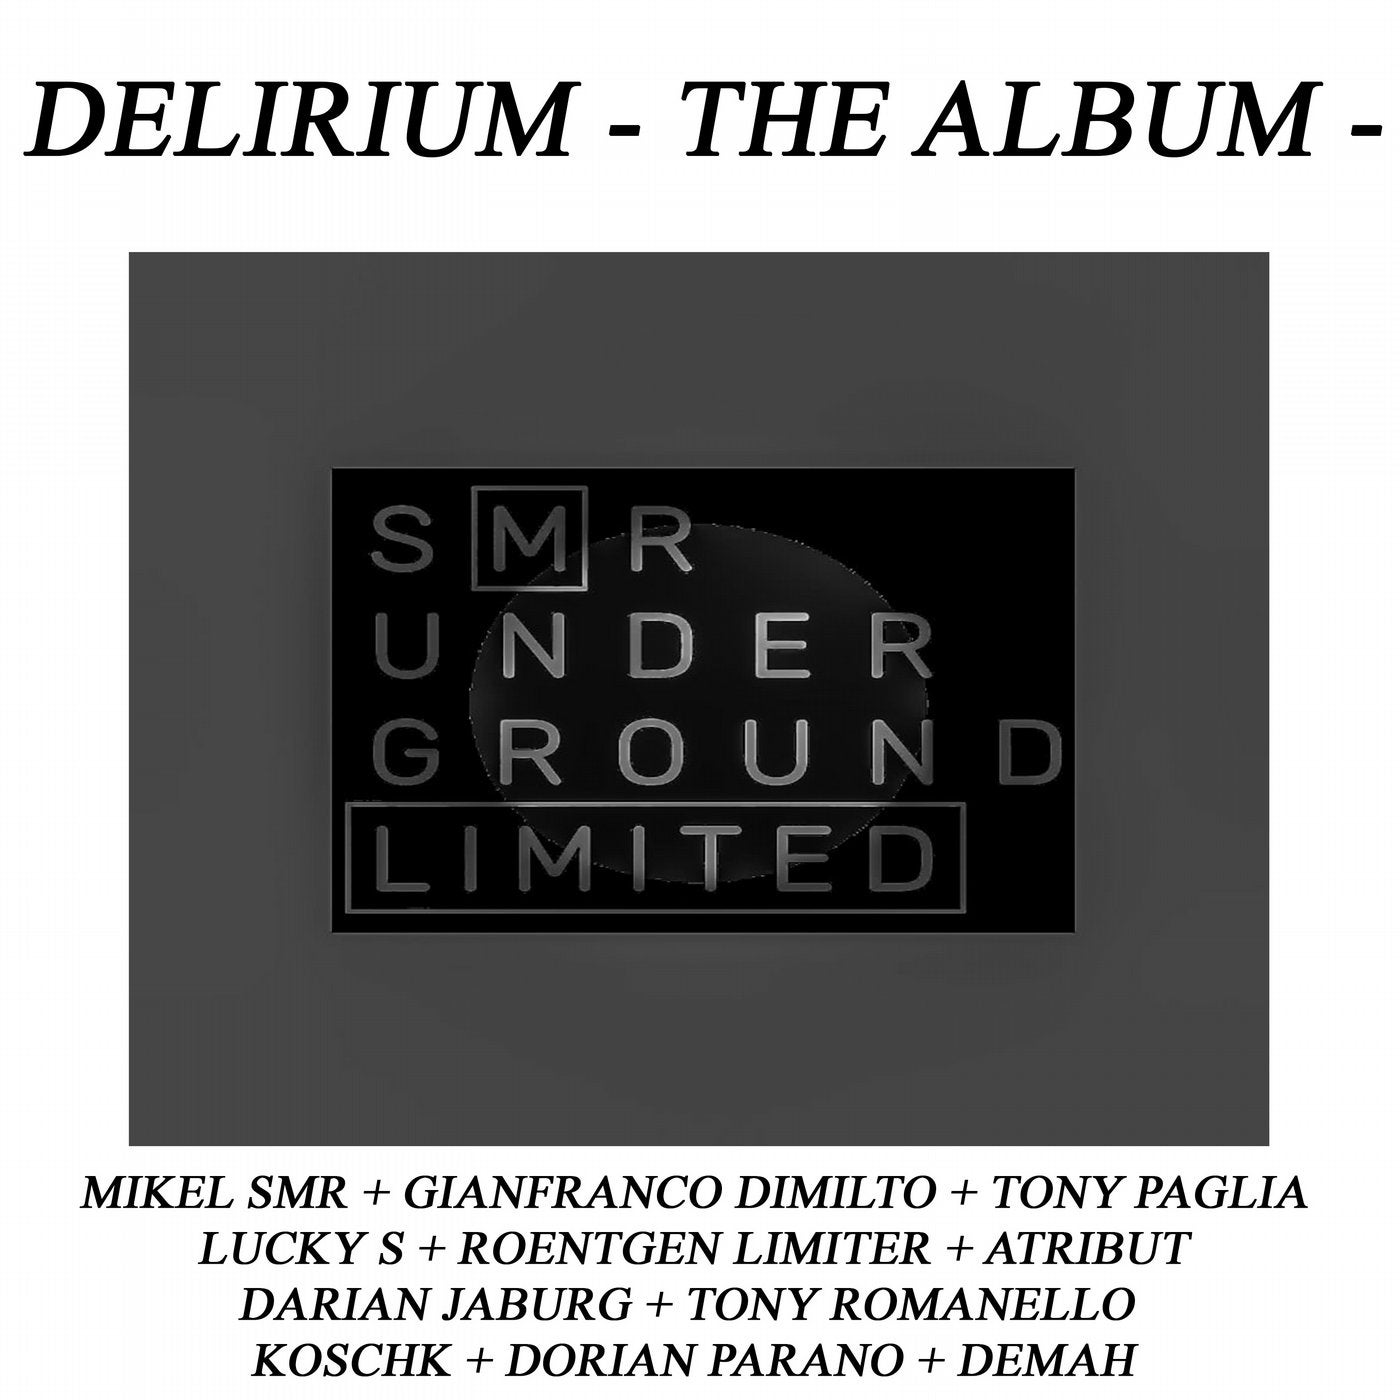 Delirium - The AlbuM -